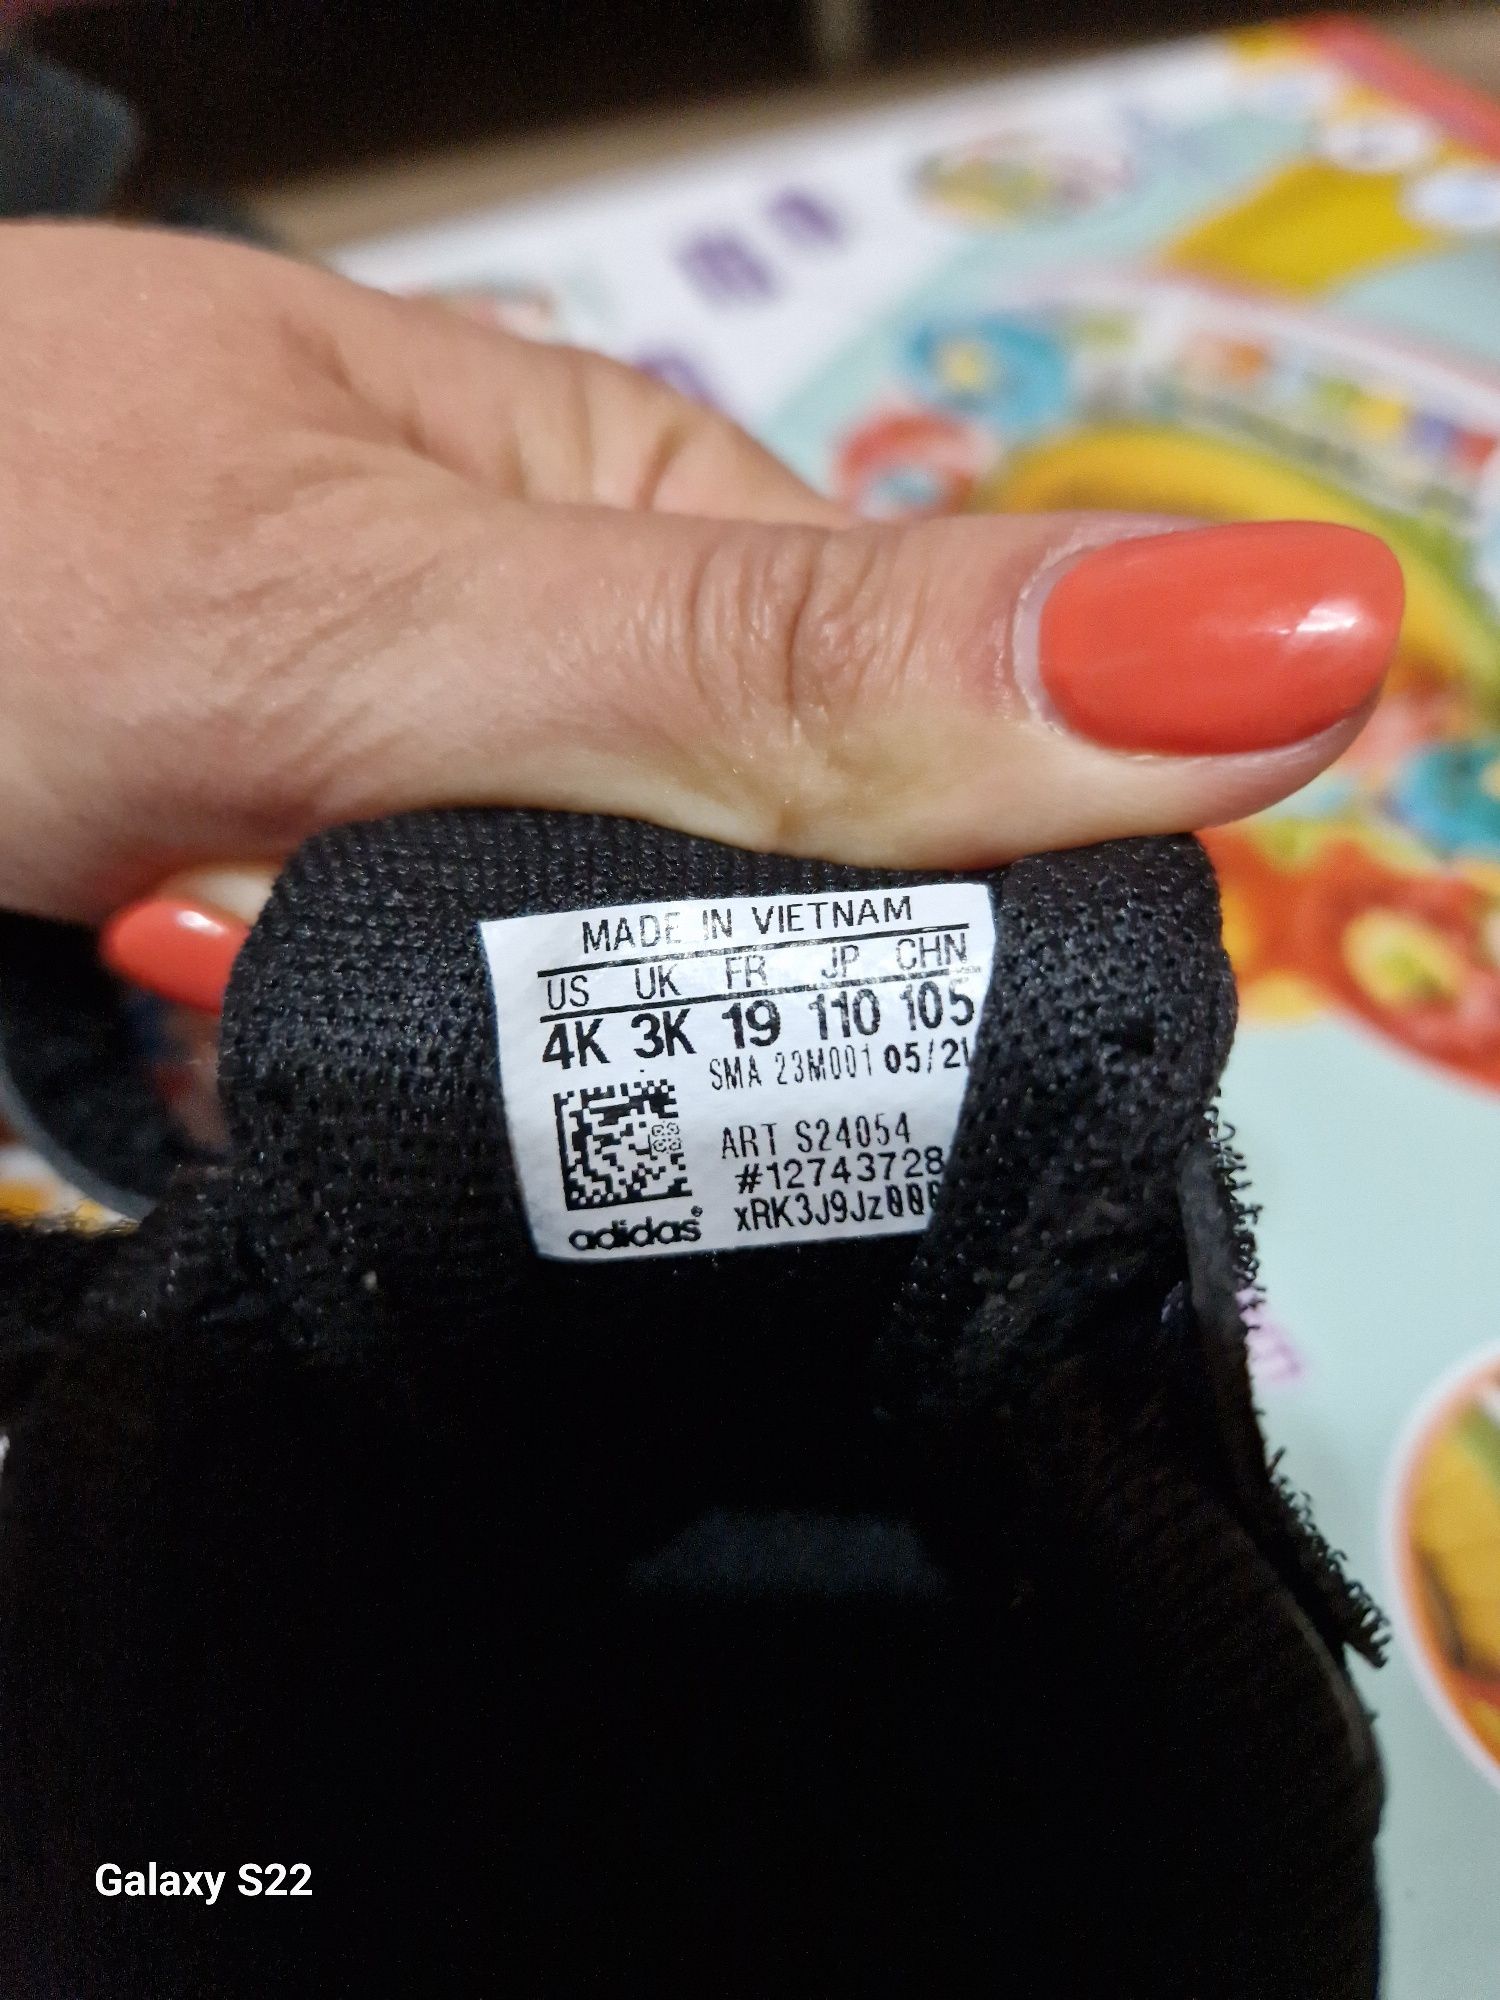 Продам дитячі кросівки Adidas